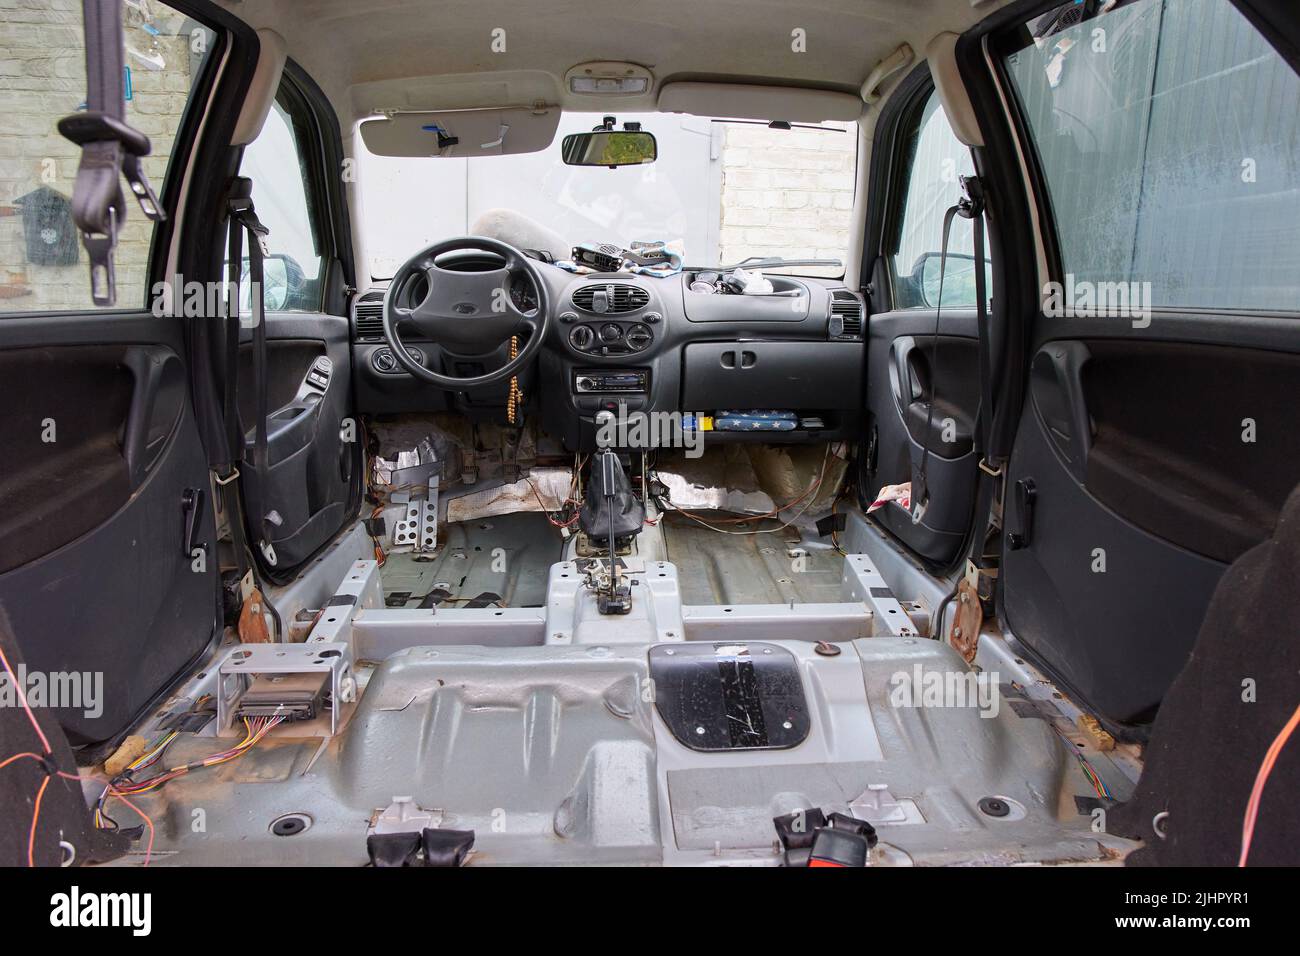 Demontierte Innenraum des Autos ohne Sitz und Matten, reparieren das Auto  Stockfotografie - Alamy